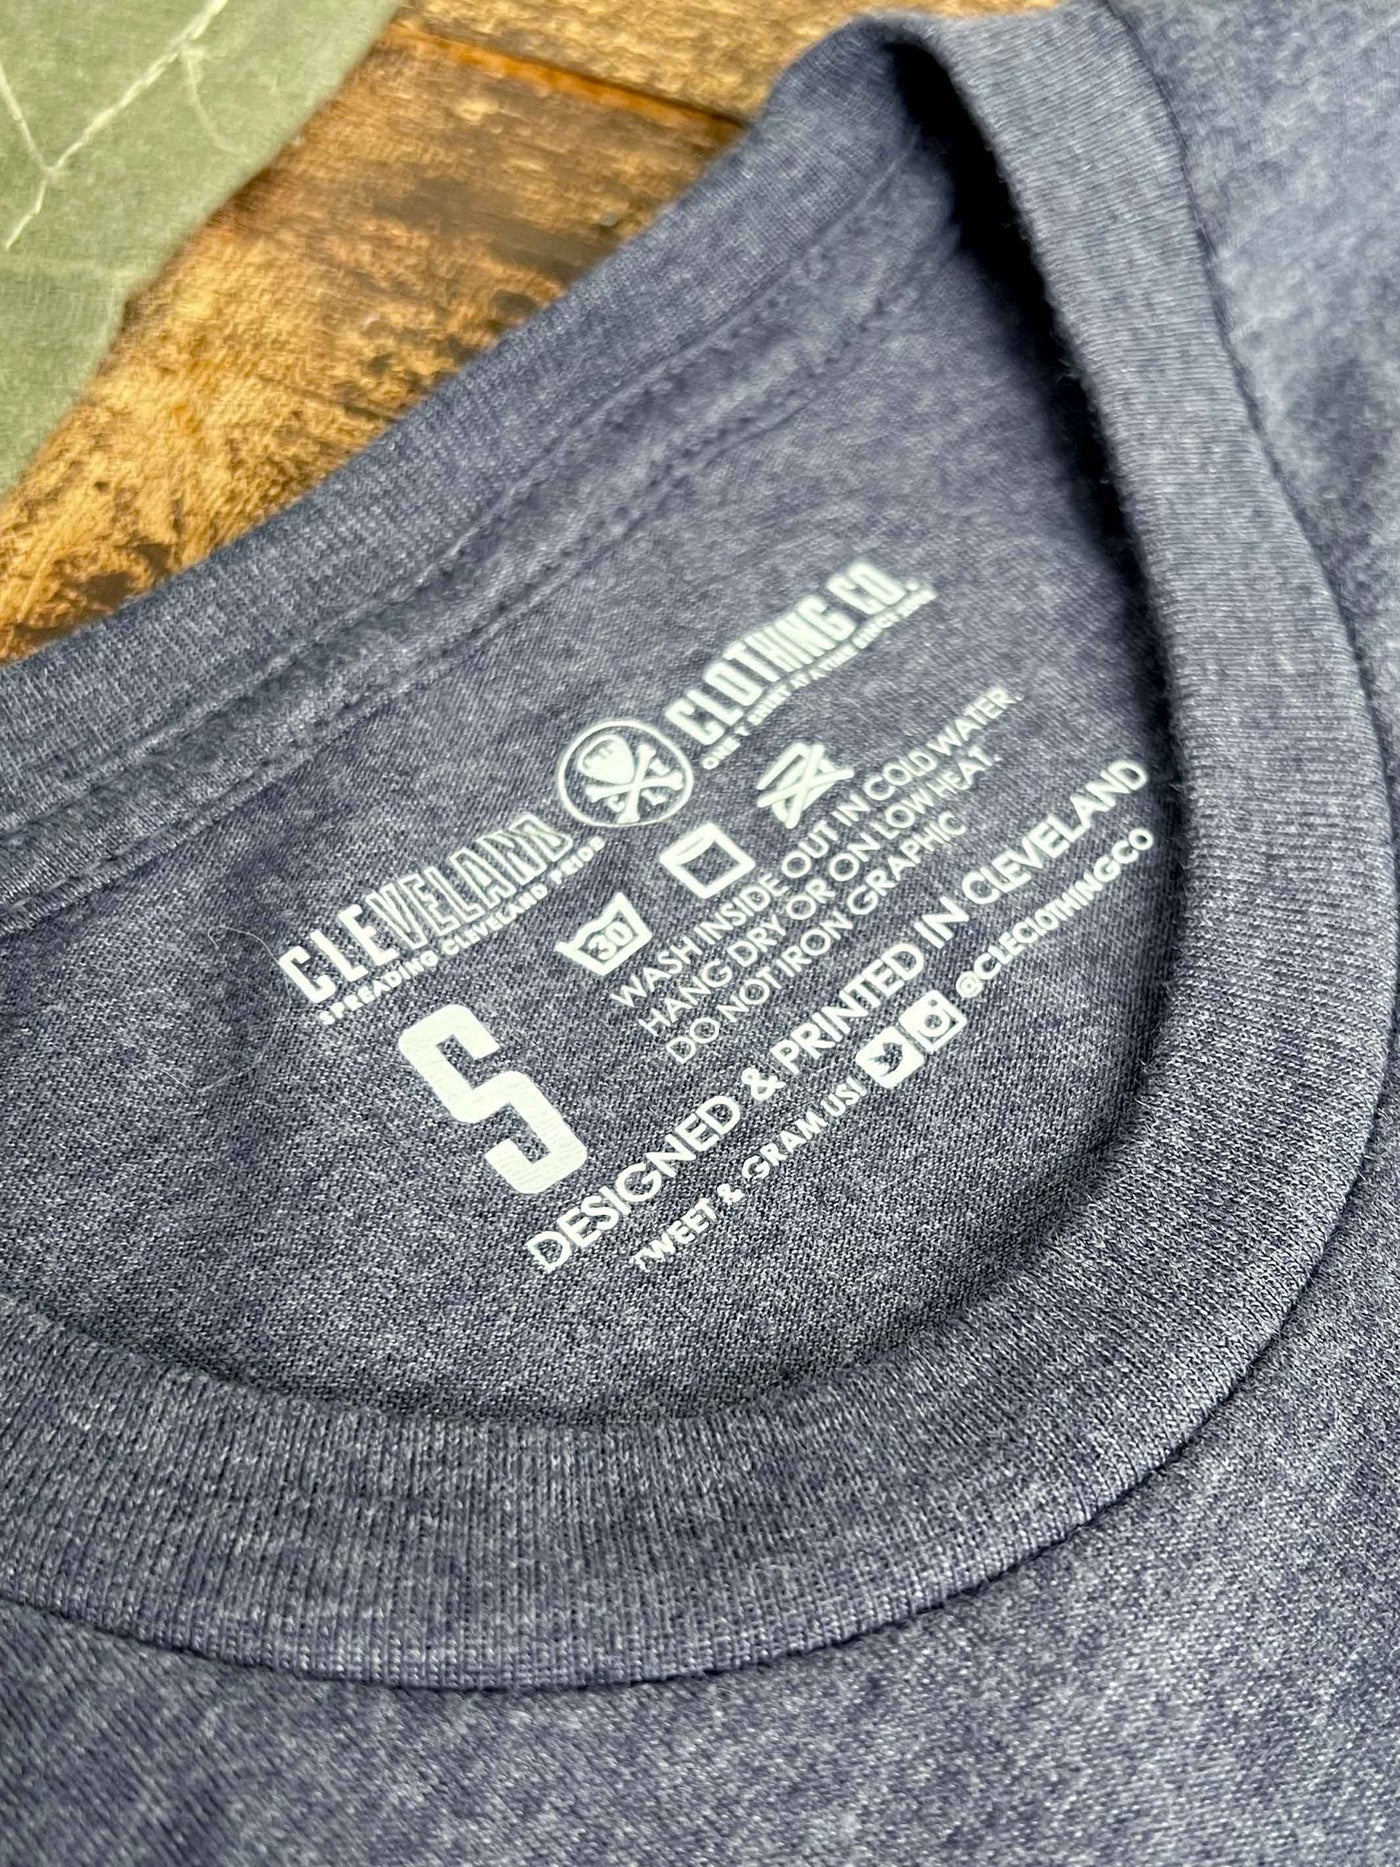 Cleveland Sunset - Navy Unisex Crew T-Shirt